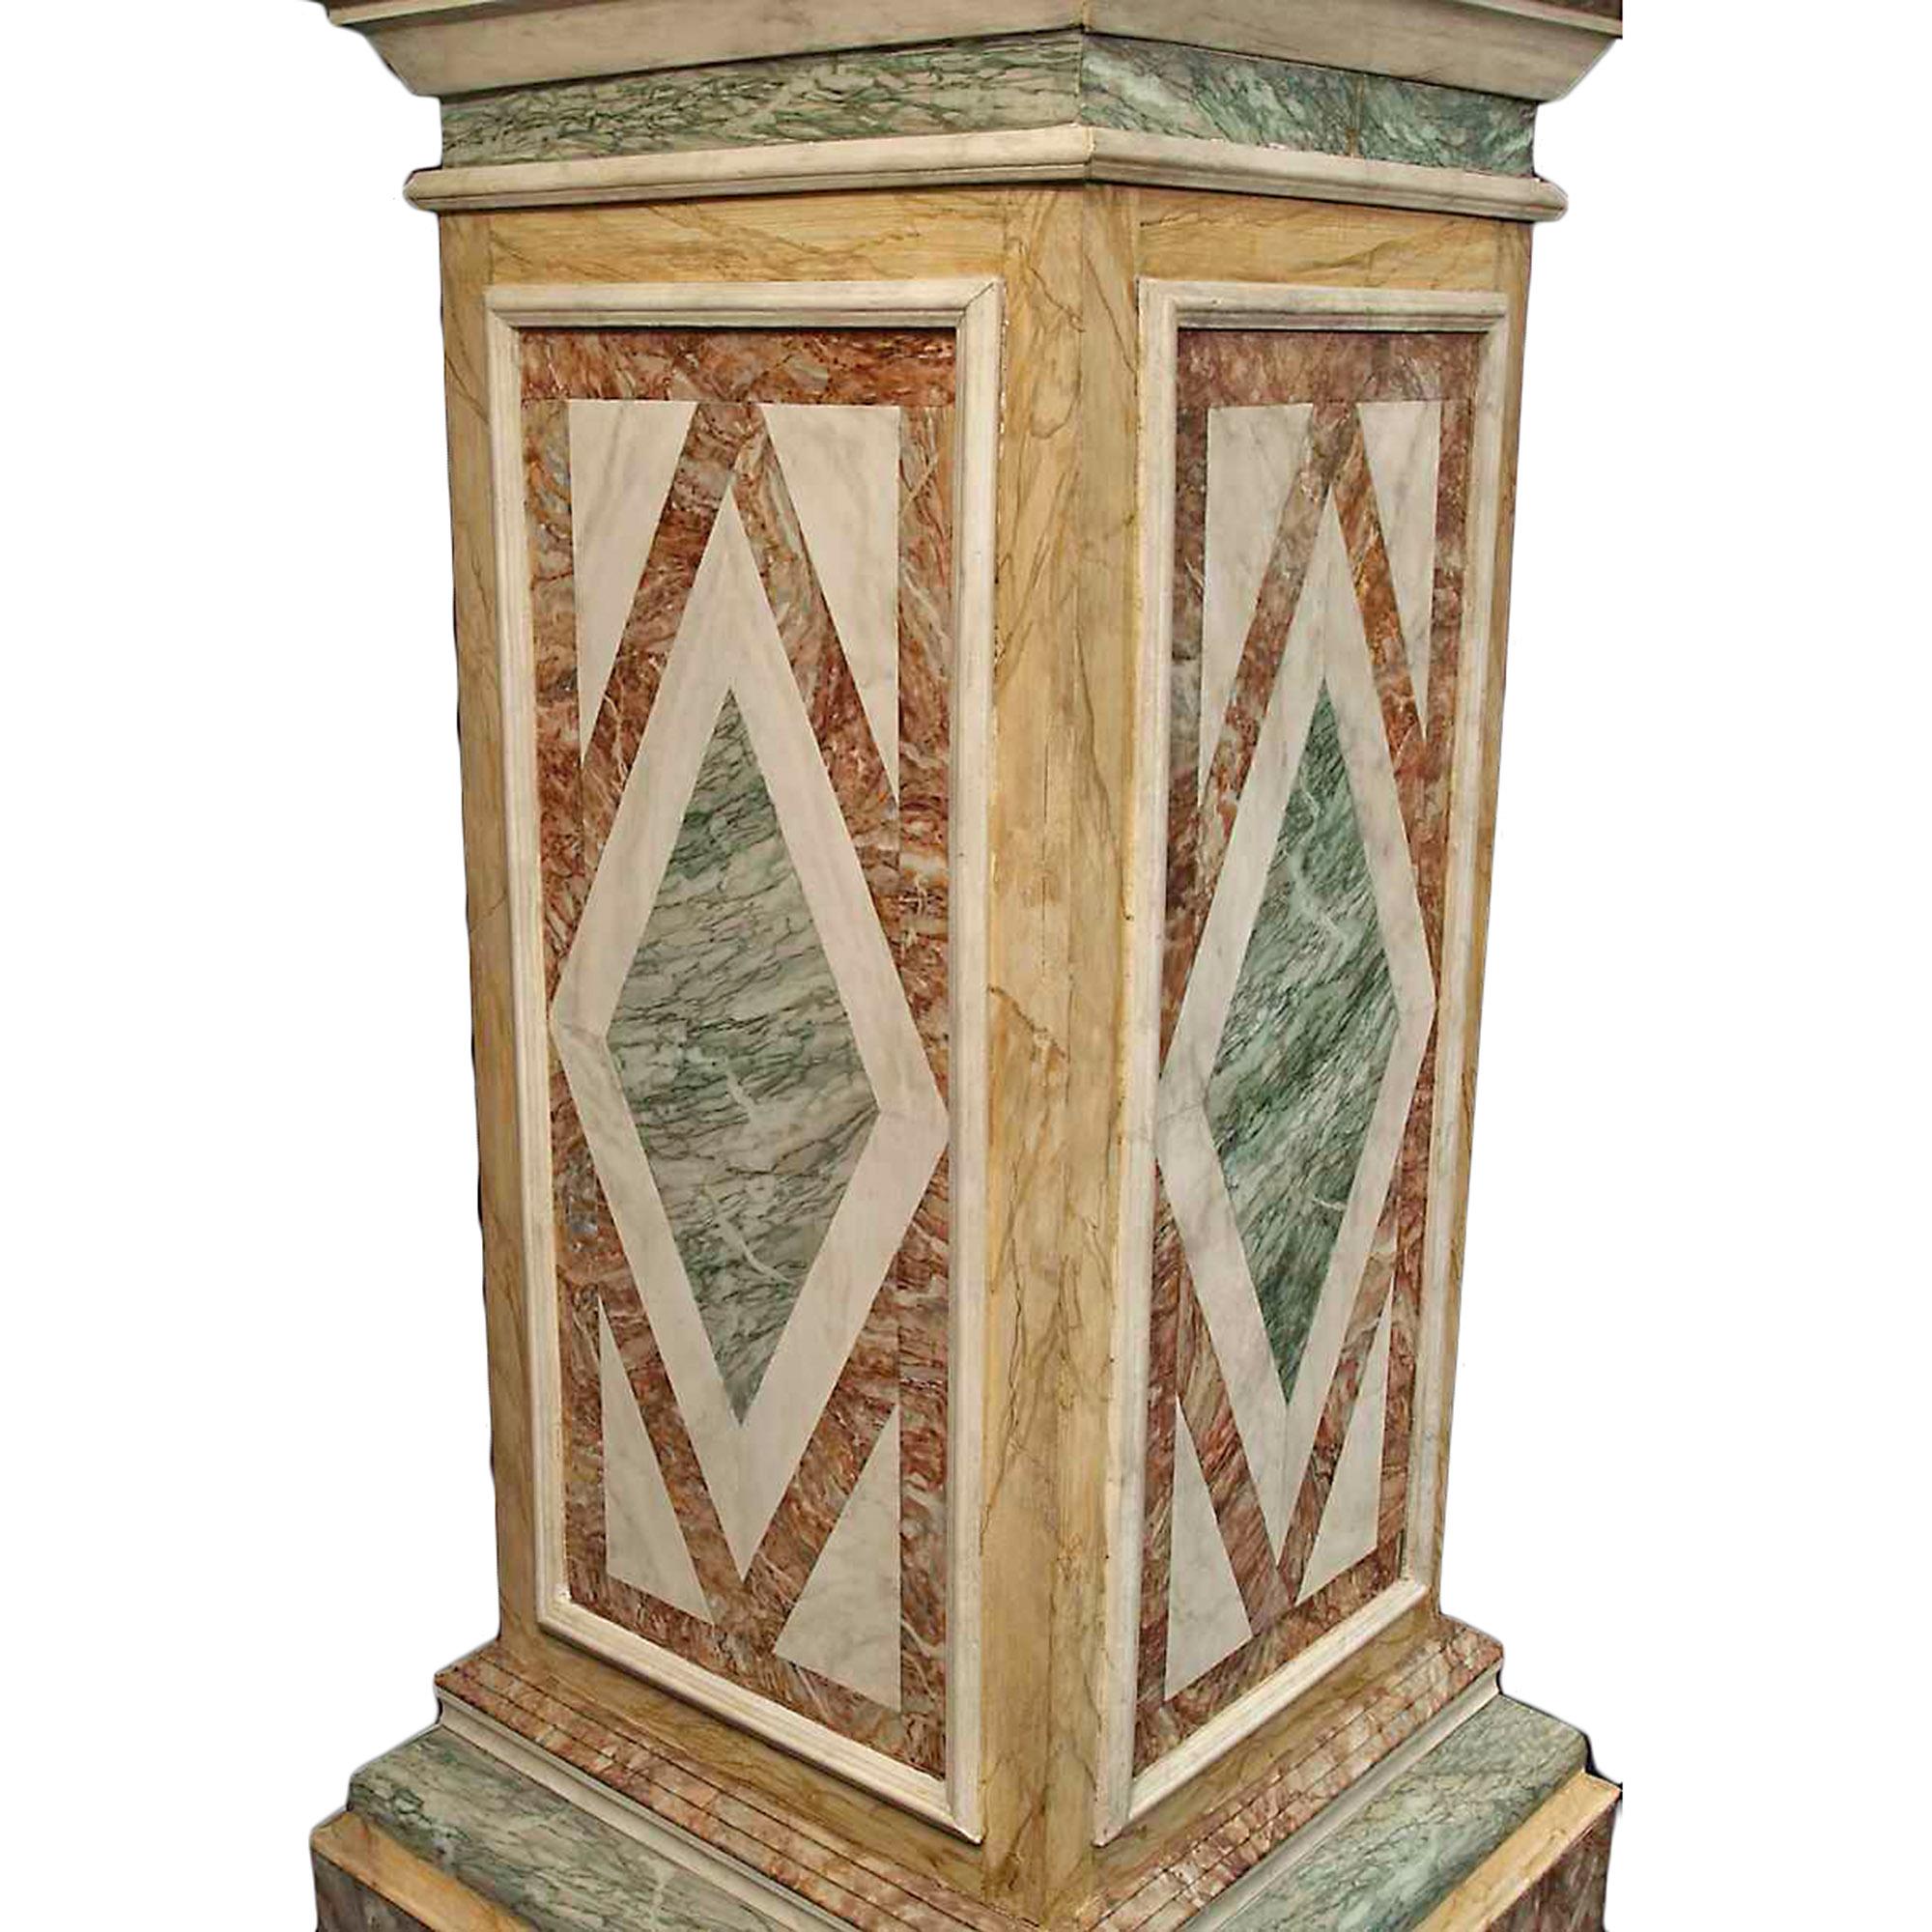 Paire de piédestaux en bois peint en faux marbre, datant du début du siècle, de grande qualité. La base carrée présente d'épaisses moulures, tandis que le support central à panneaux présente un motif très détaillé en forme de losange sur tous les